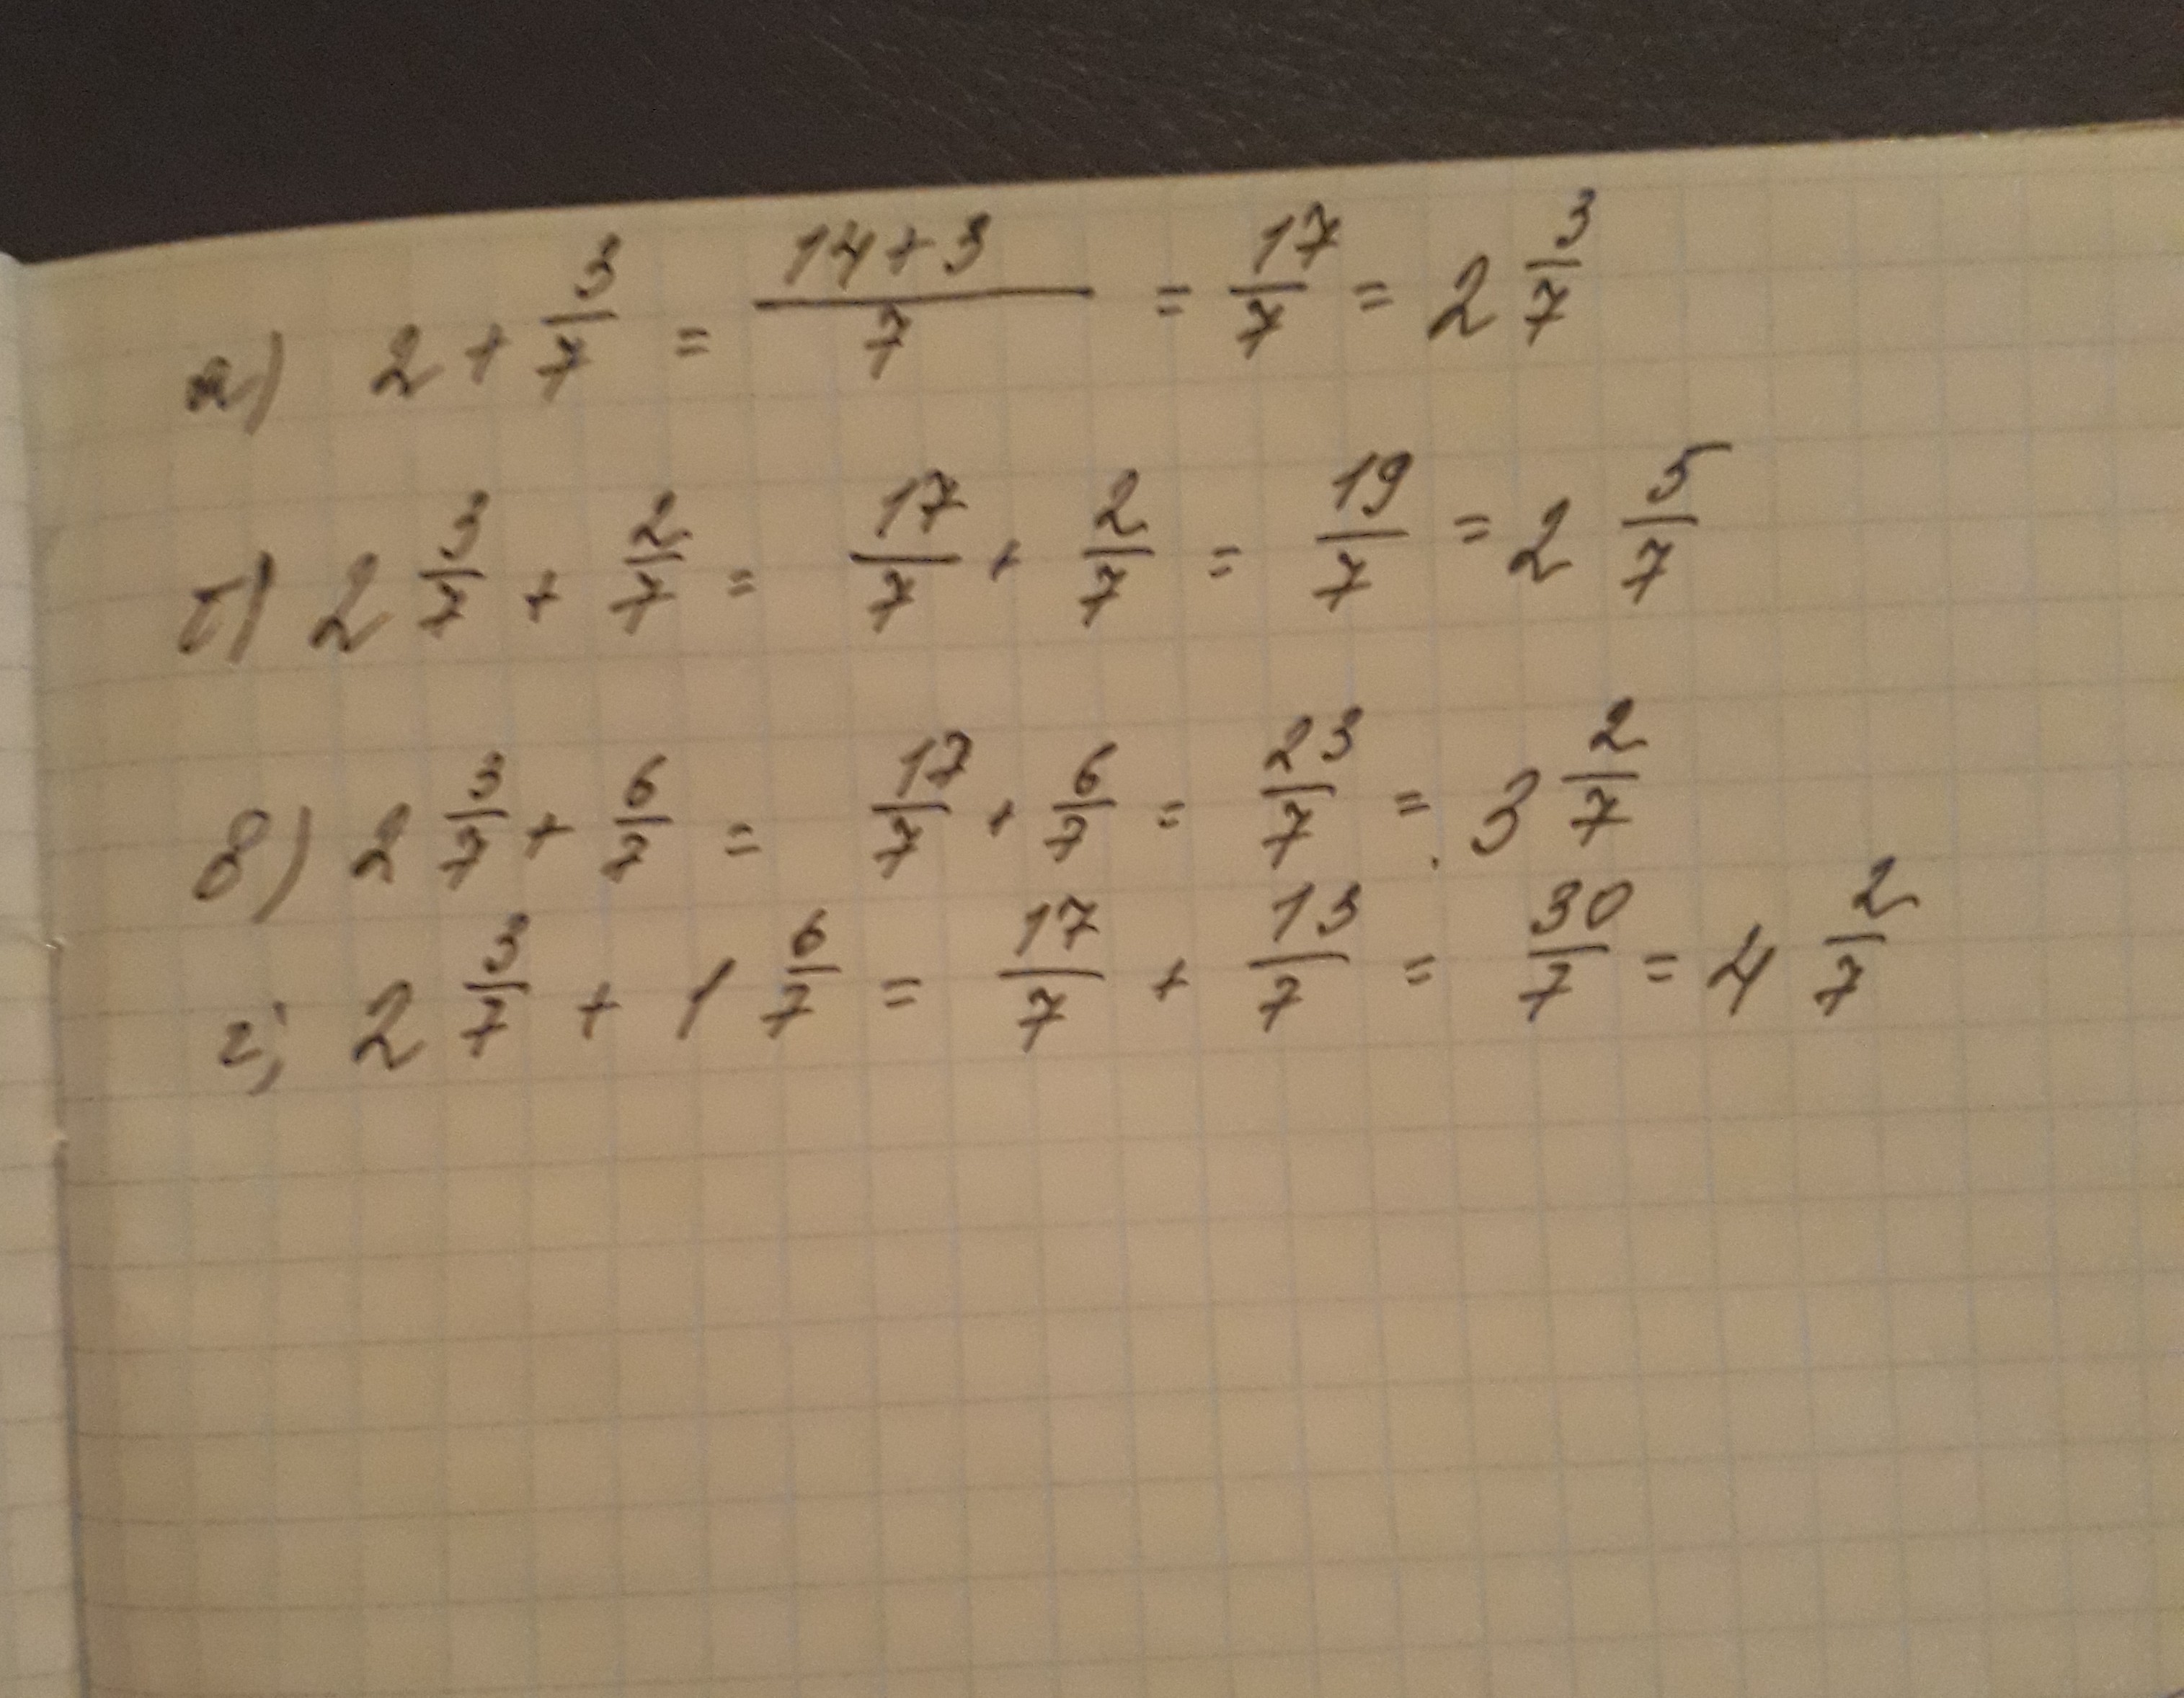 2 3 7 2х 14. Вычислите 2/7. Вычислите 3/7:2. Вычислите 7 3 + 7 2. (−2)^7⋅6 Вычислите.